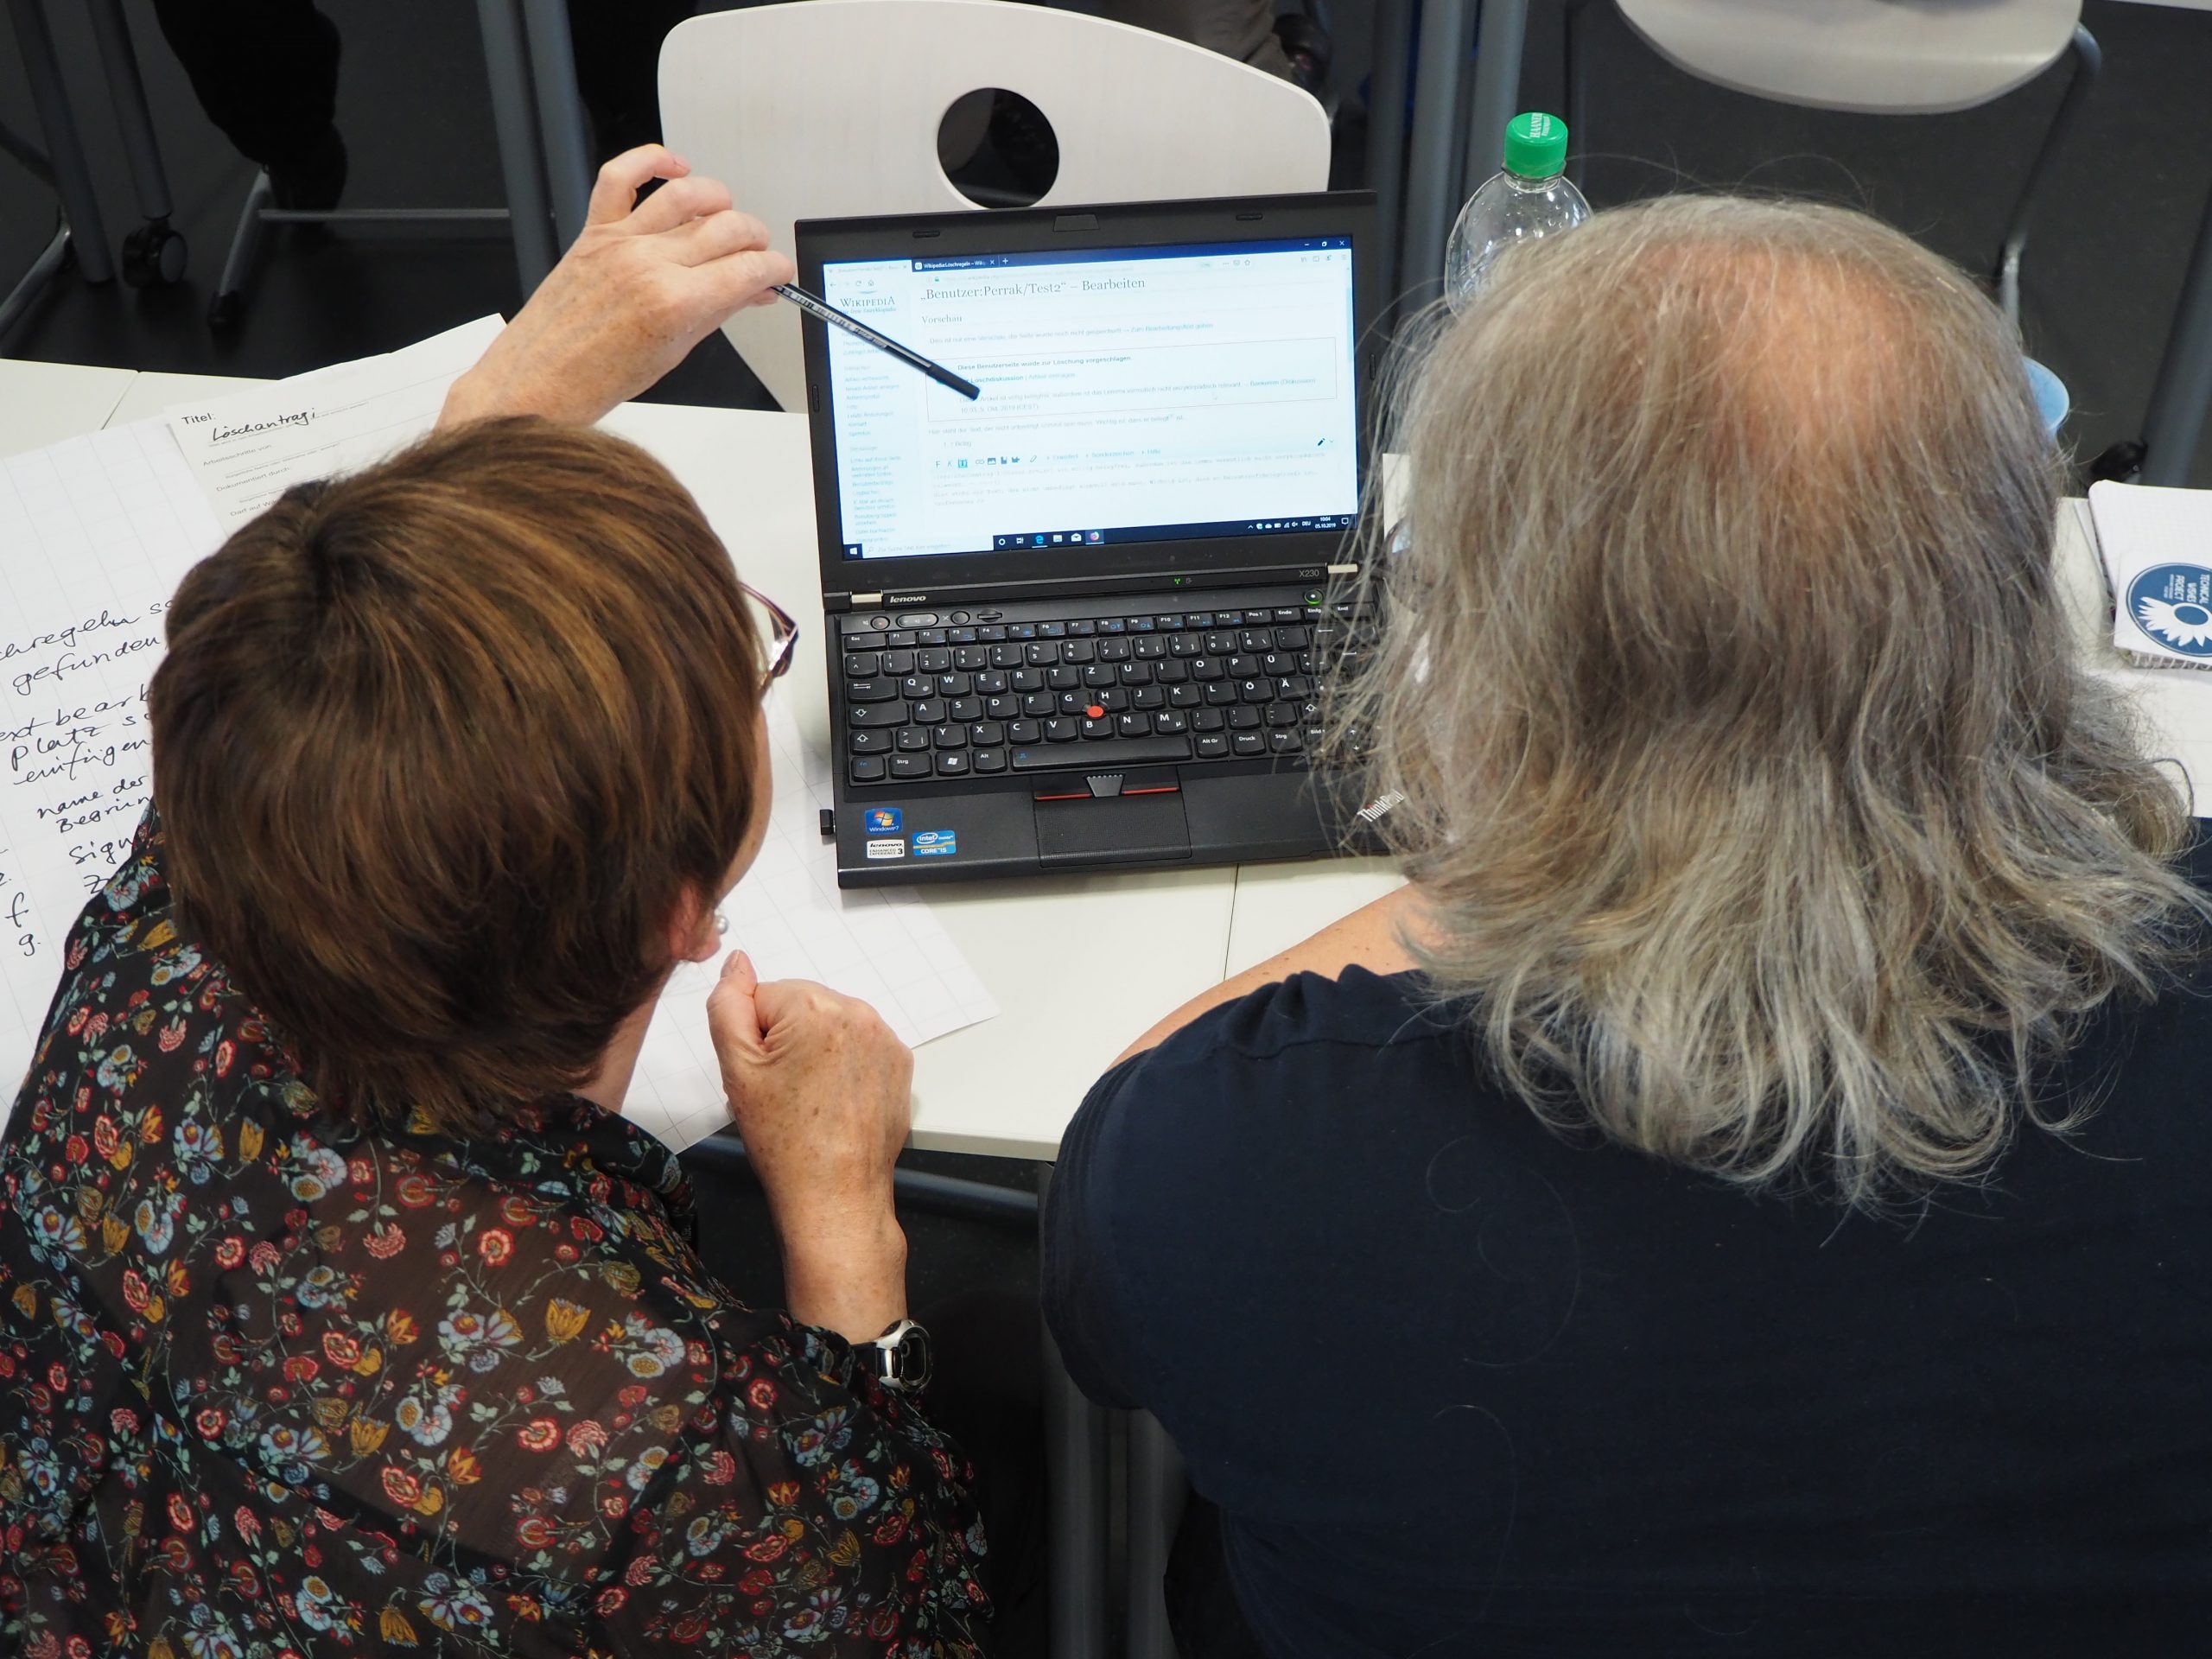 Zwei Personen sitzen nebeneinander am Tisch und schauen auf den Bildschrim eines Laptops und sind vom hinten zu sehen. Die Person links zeigt mit einem Stift auf etwas im Bildschirm.